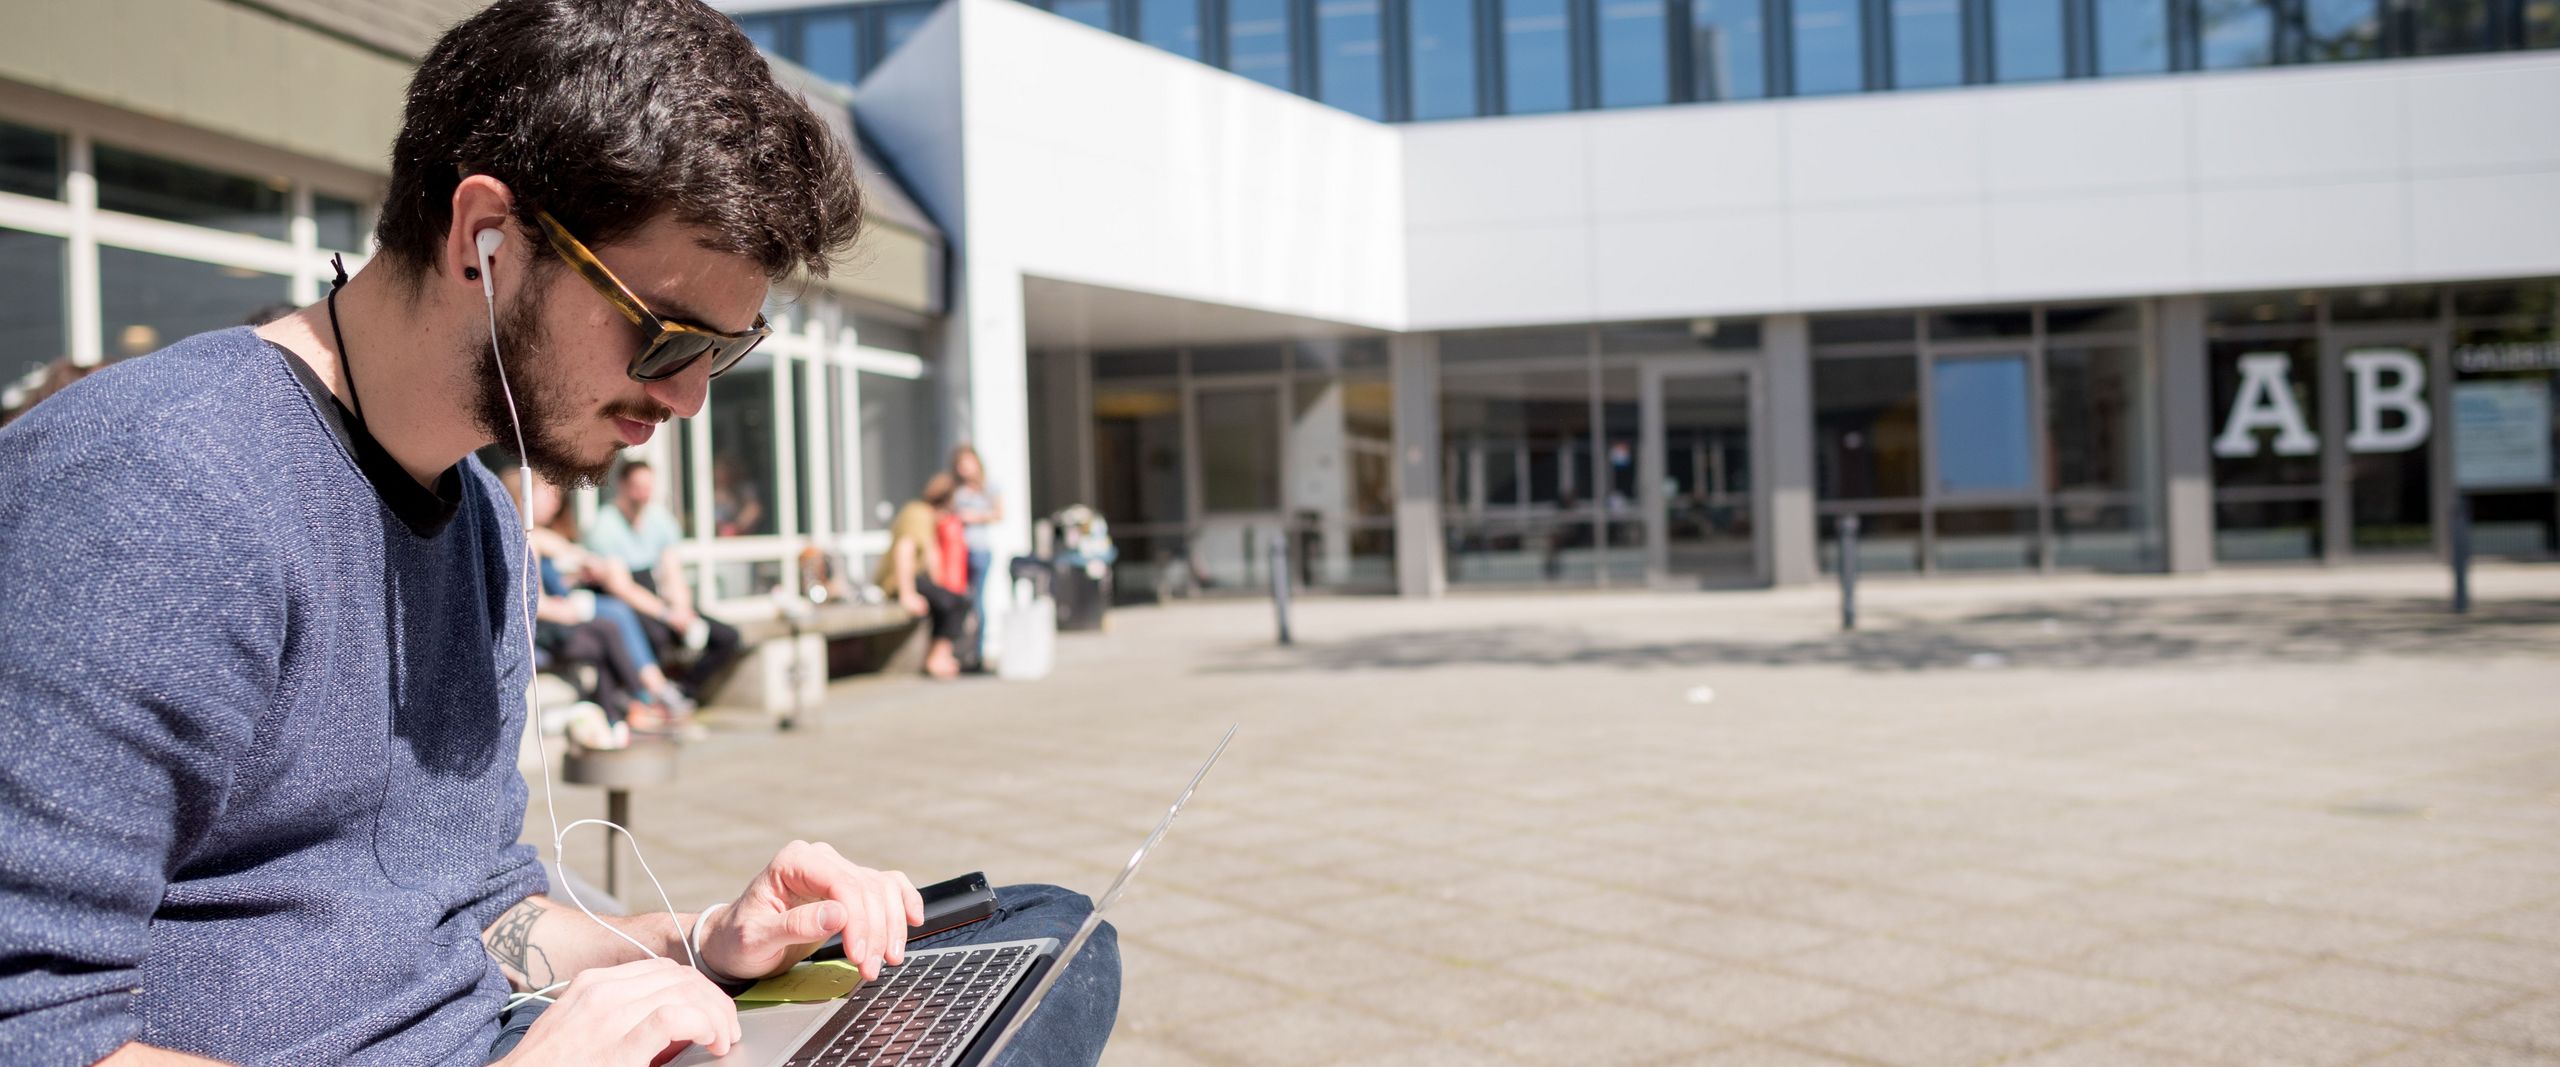 Student sitzt mit Laptop vor dem AB Gebäude draußen